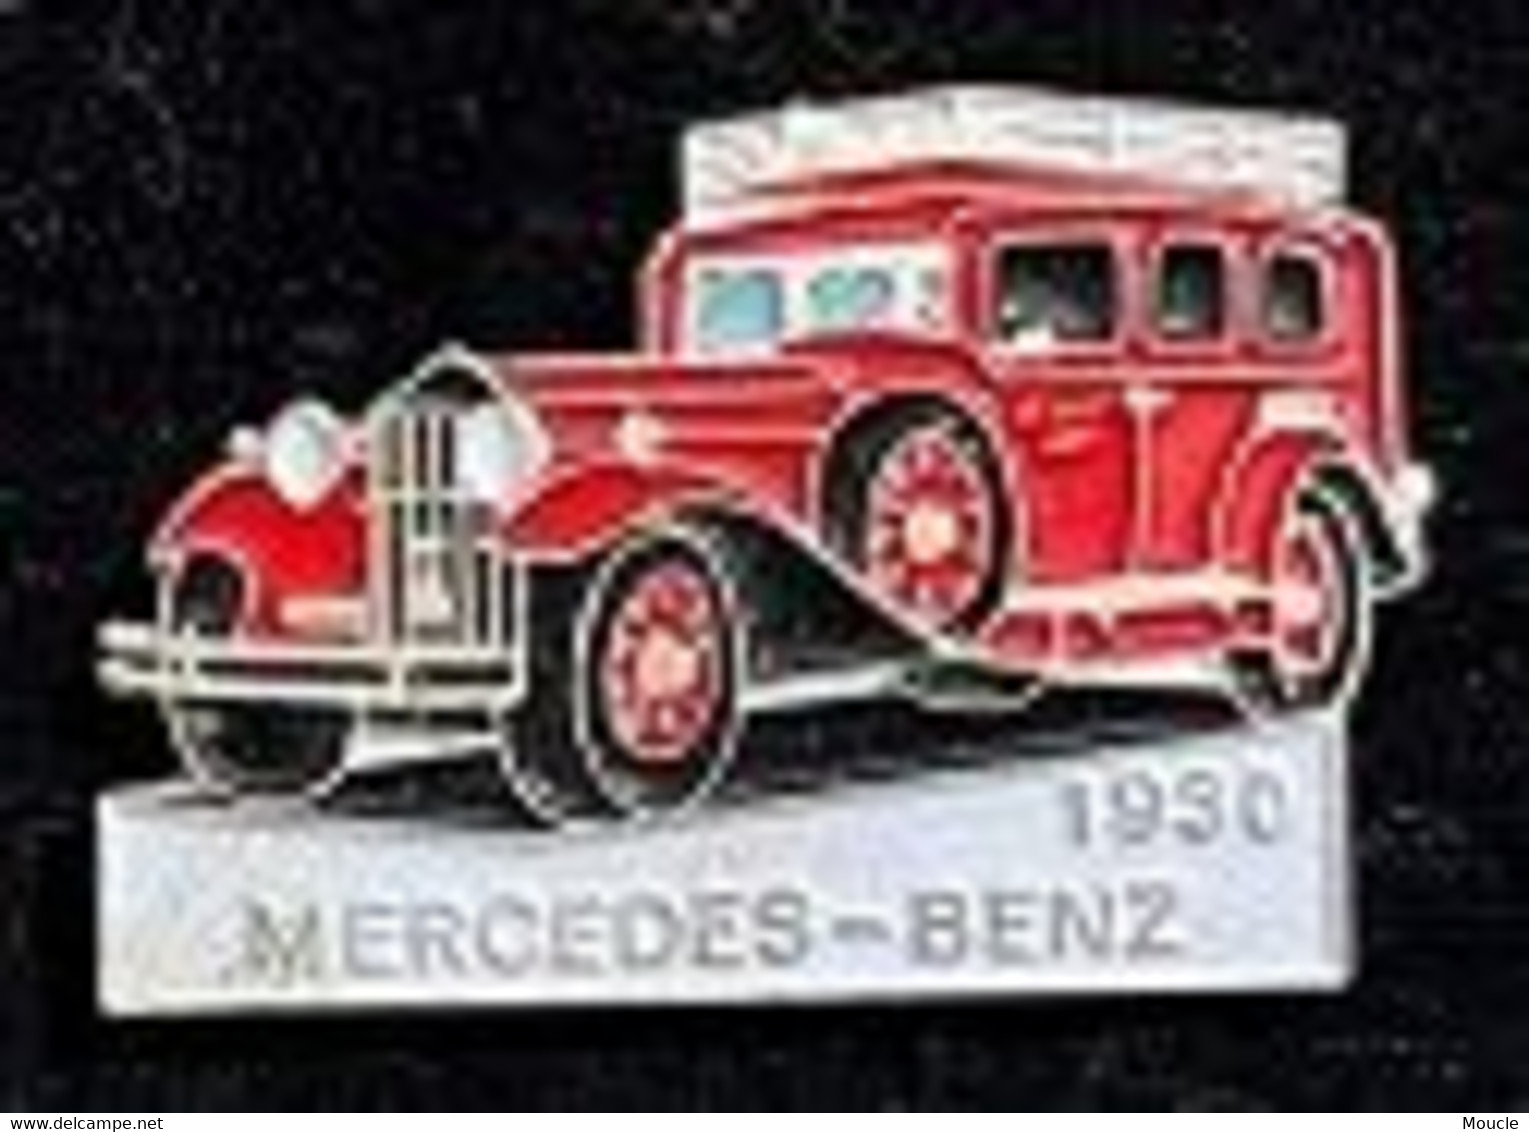 MERCEDES BENZ 1930 - ROUGE N°146 - SAPEURS POMPIERS - FEUEWEHRAUTO - VOITURE POMPIERS -CAR - AUTOMOBILE -     (30) - Feuerwehr